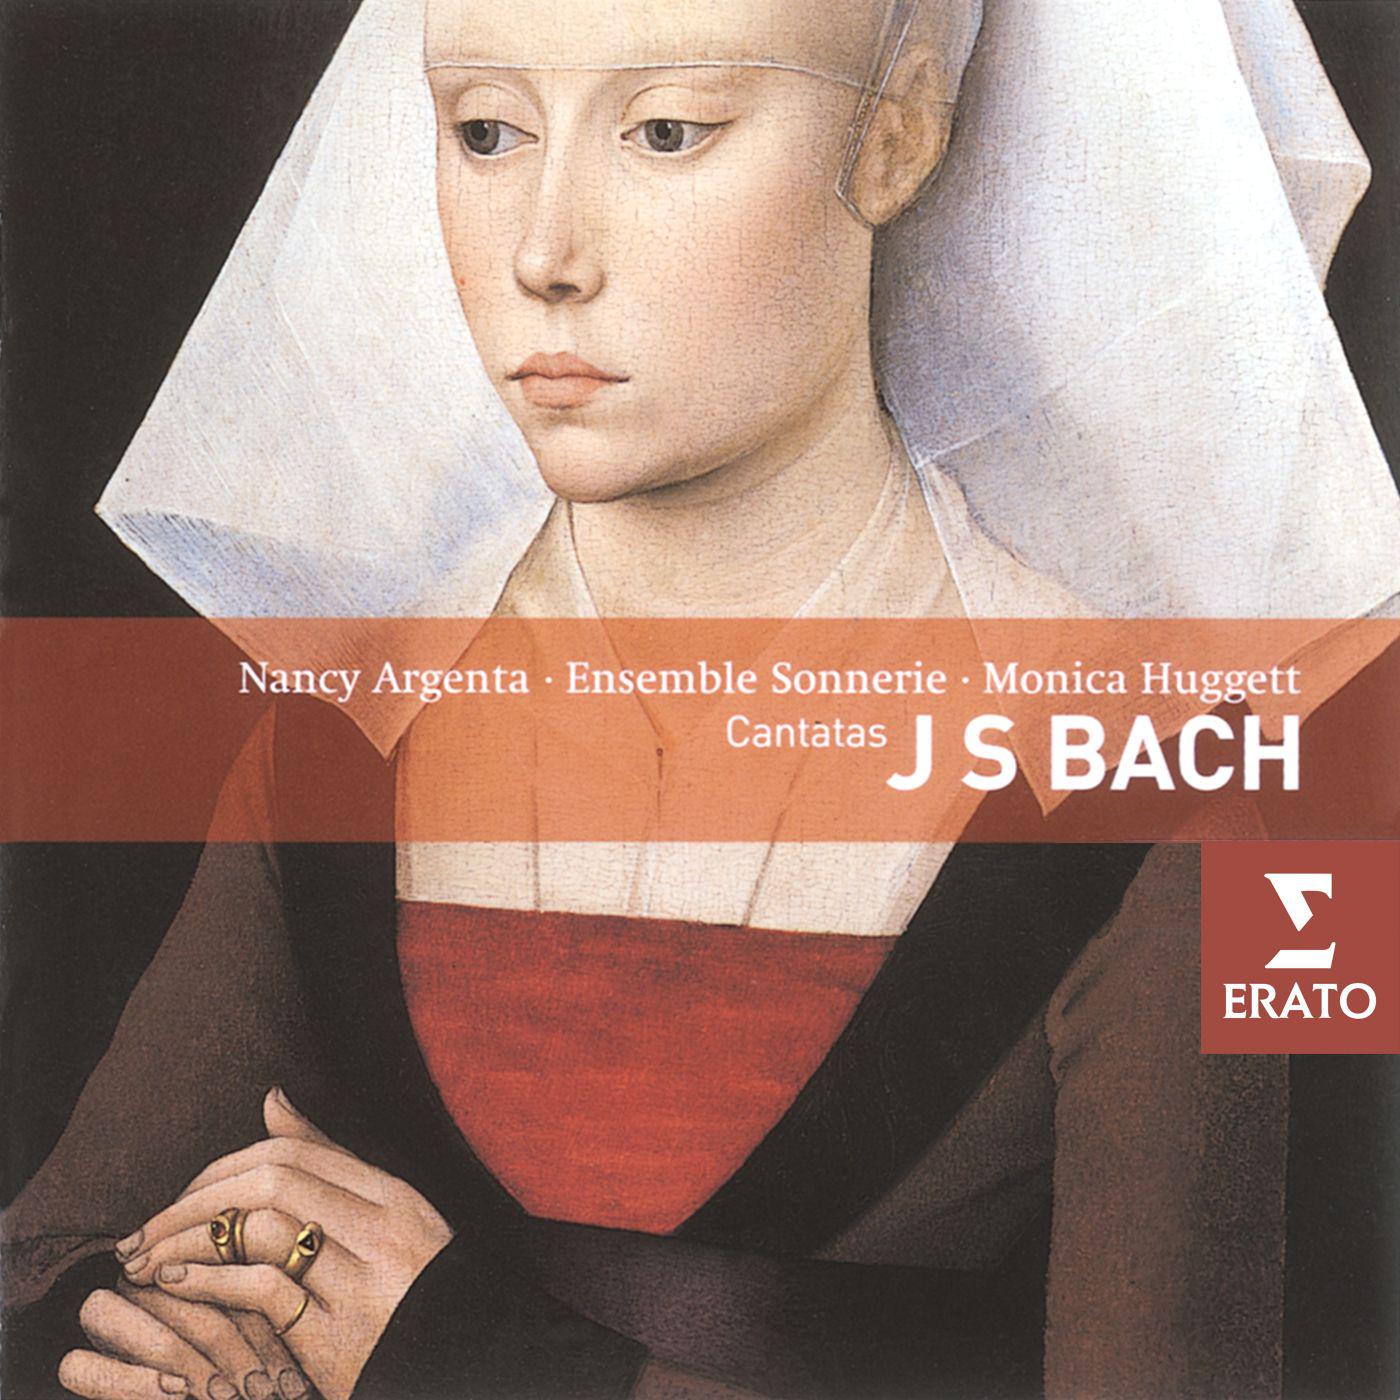 Cantata No. 51, "Jauchzet Gott in allen Landen" BWV 51: Chorale: Sei Lob und Preis mit Ehren